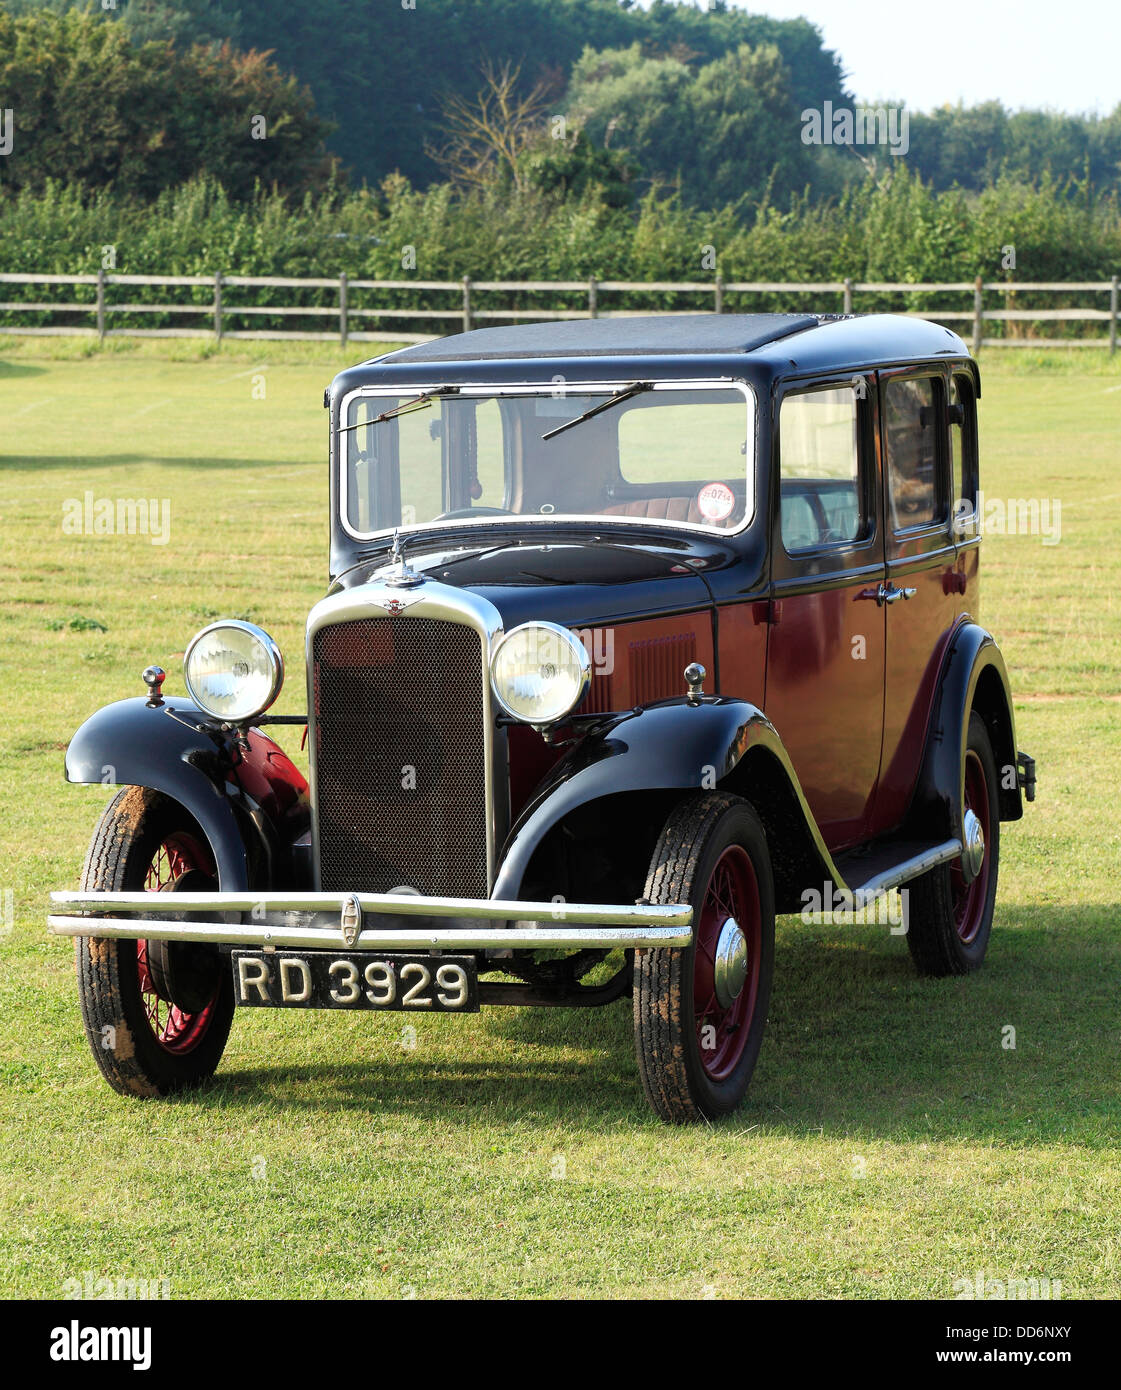 Hillman Minx, 1932 vintage motor car, England Regno Unito British classic cars motori motore automobile automobili Foto Stock